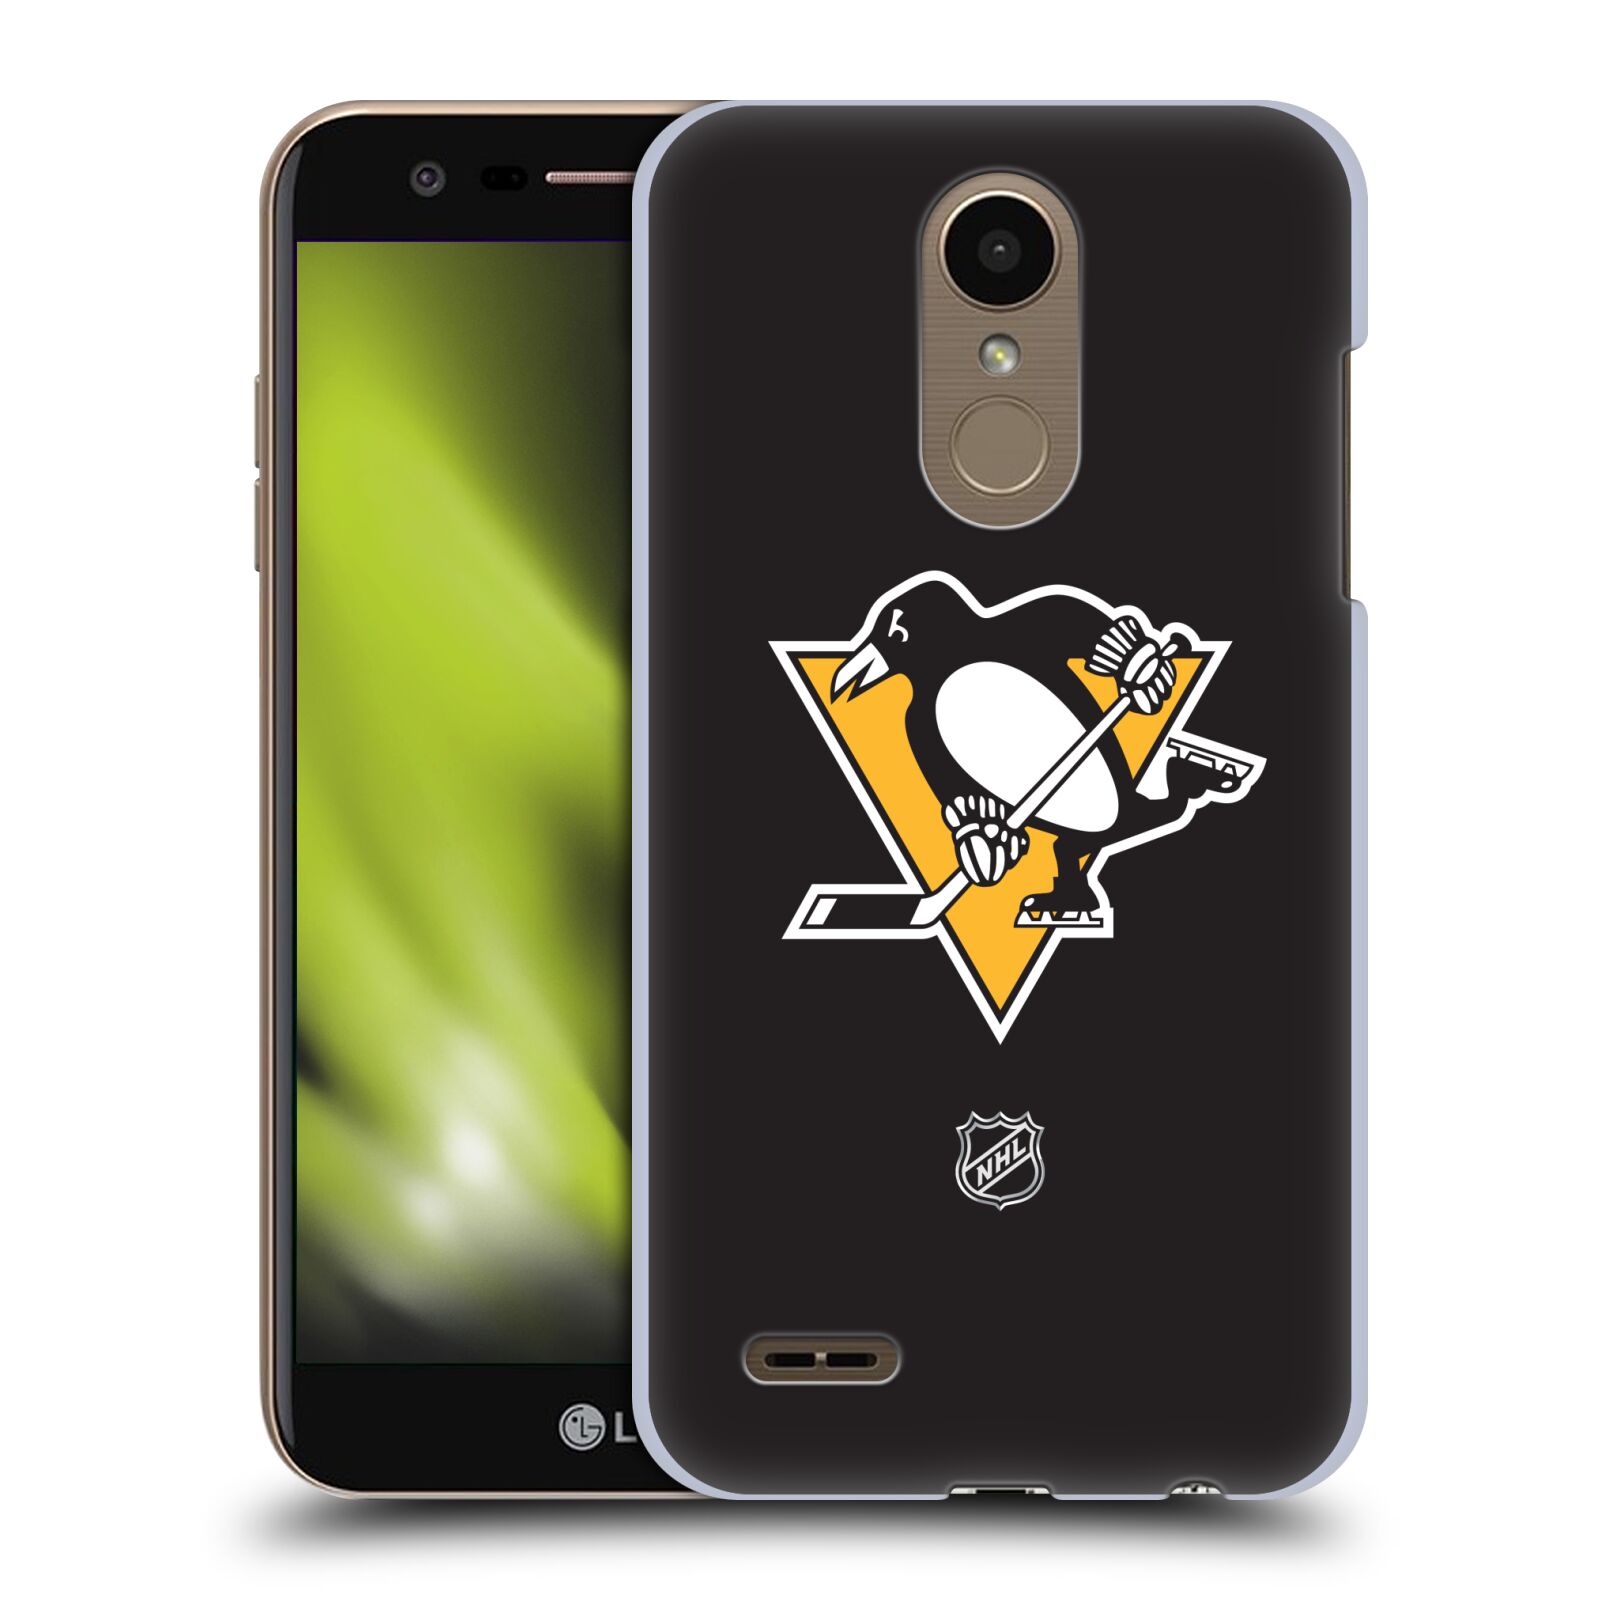 Pouzdro na mobil LG K10 2018 - HEAD CASE - Hokej NHL - Pittsburgh Penguins - černé pozadí znak